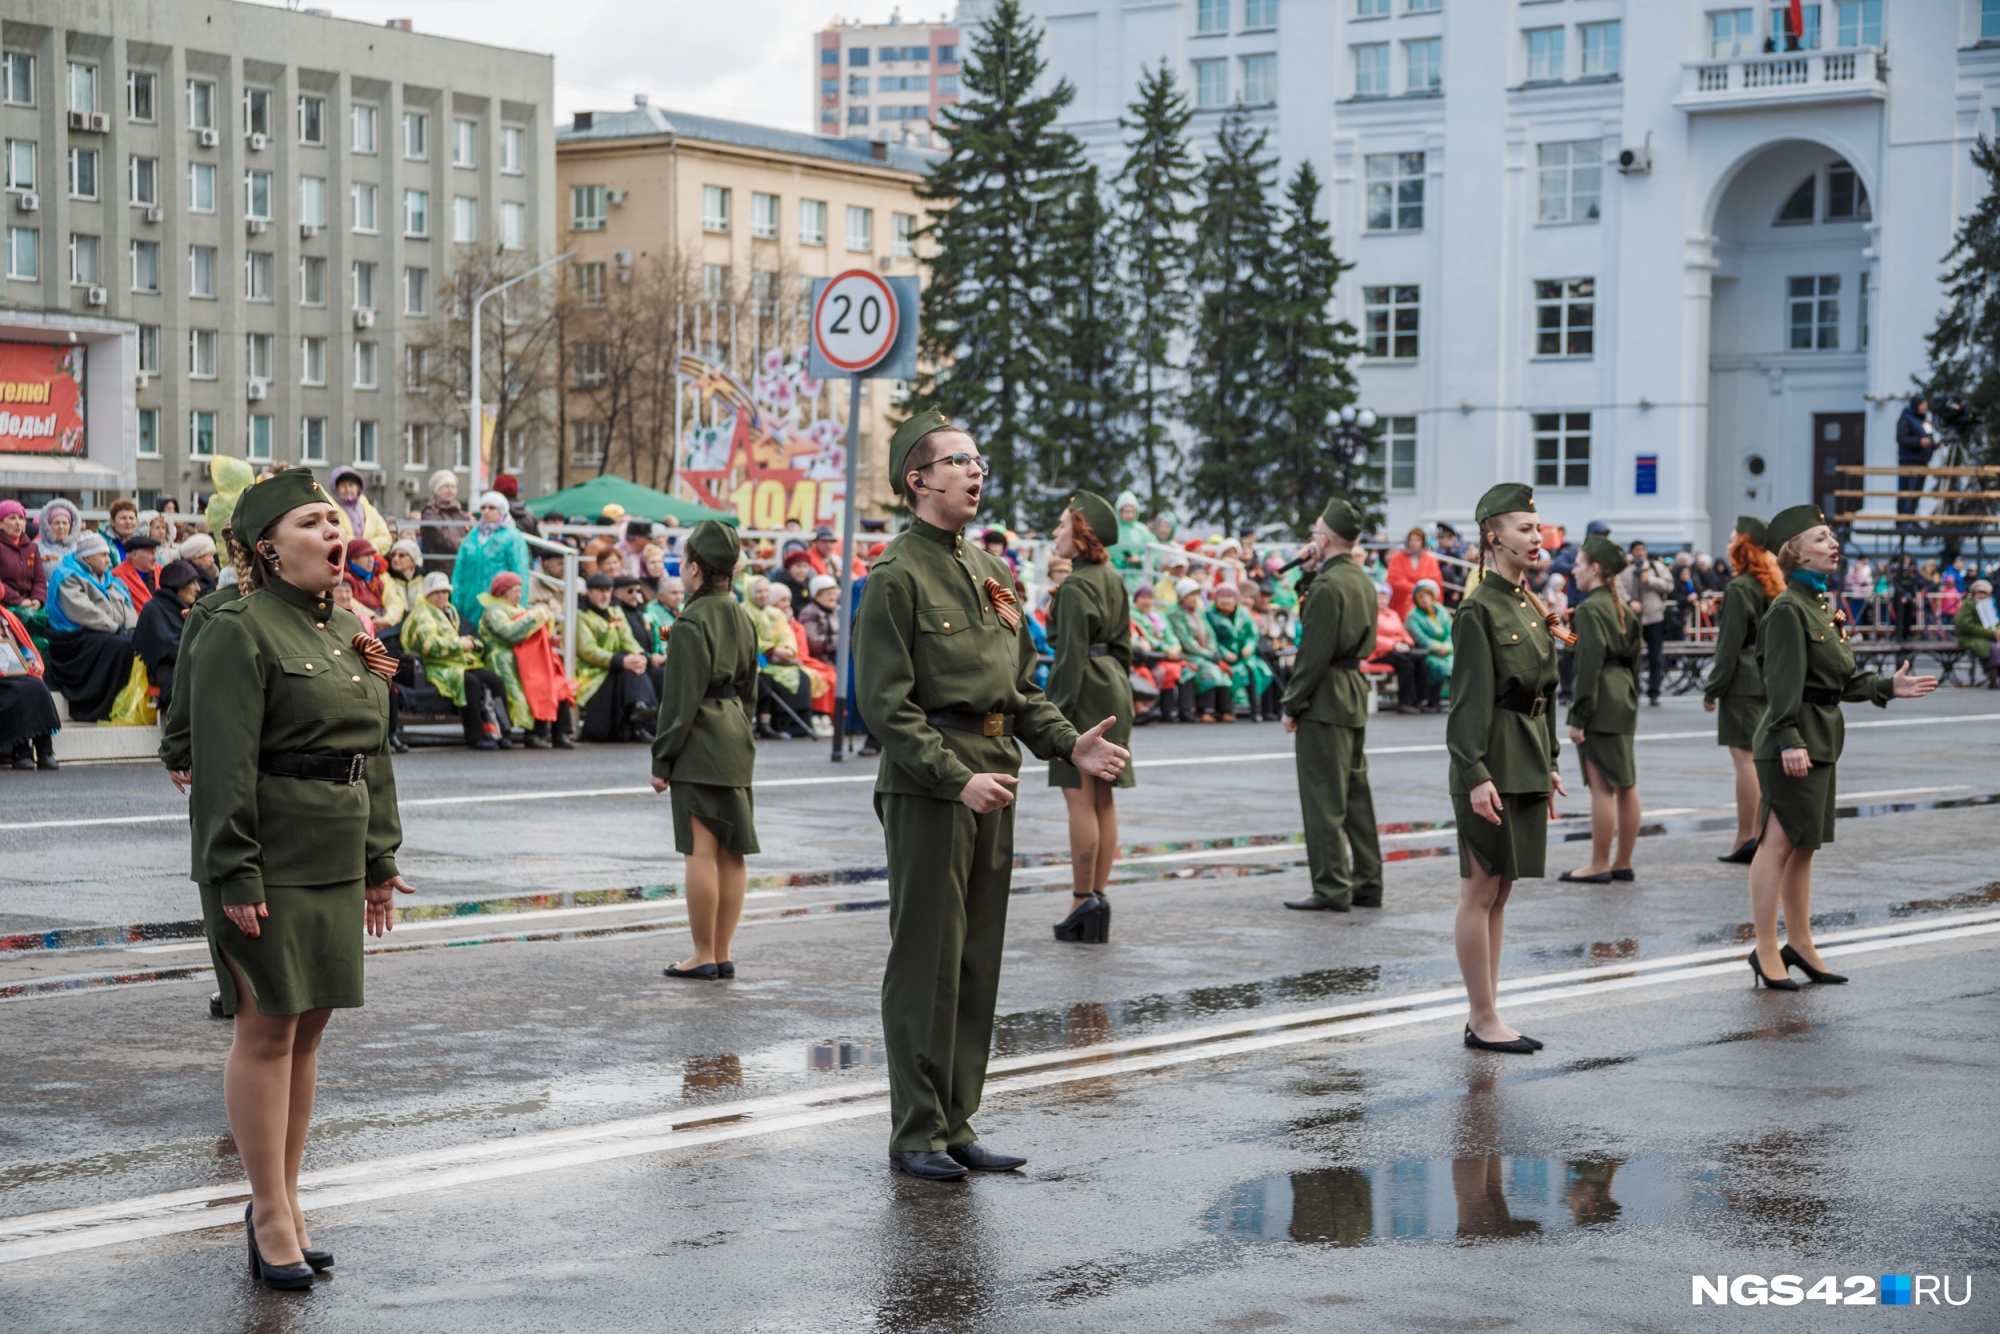 Оркестр, военные и ретроавтомобили: кто будет участвовать в парадах Победы в Кузбассе